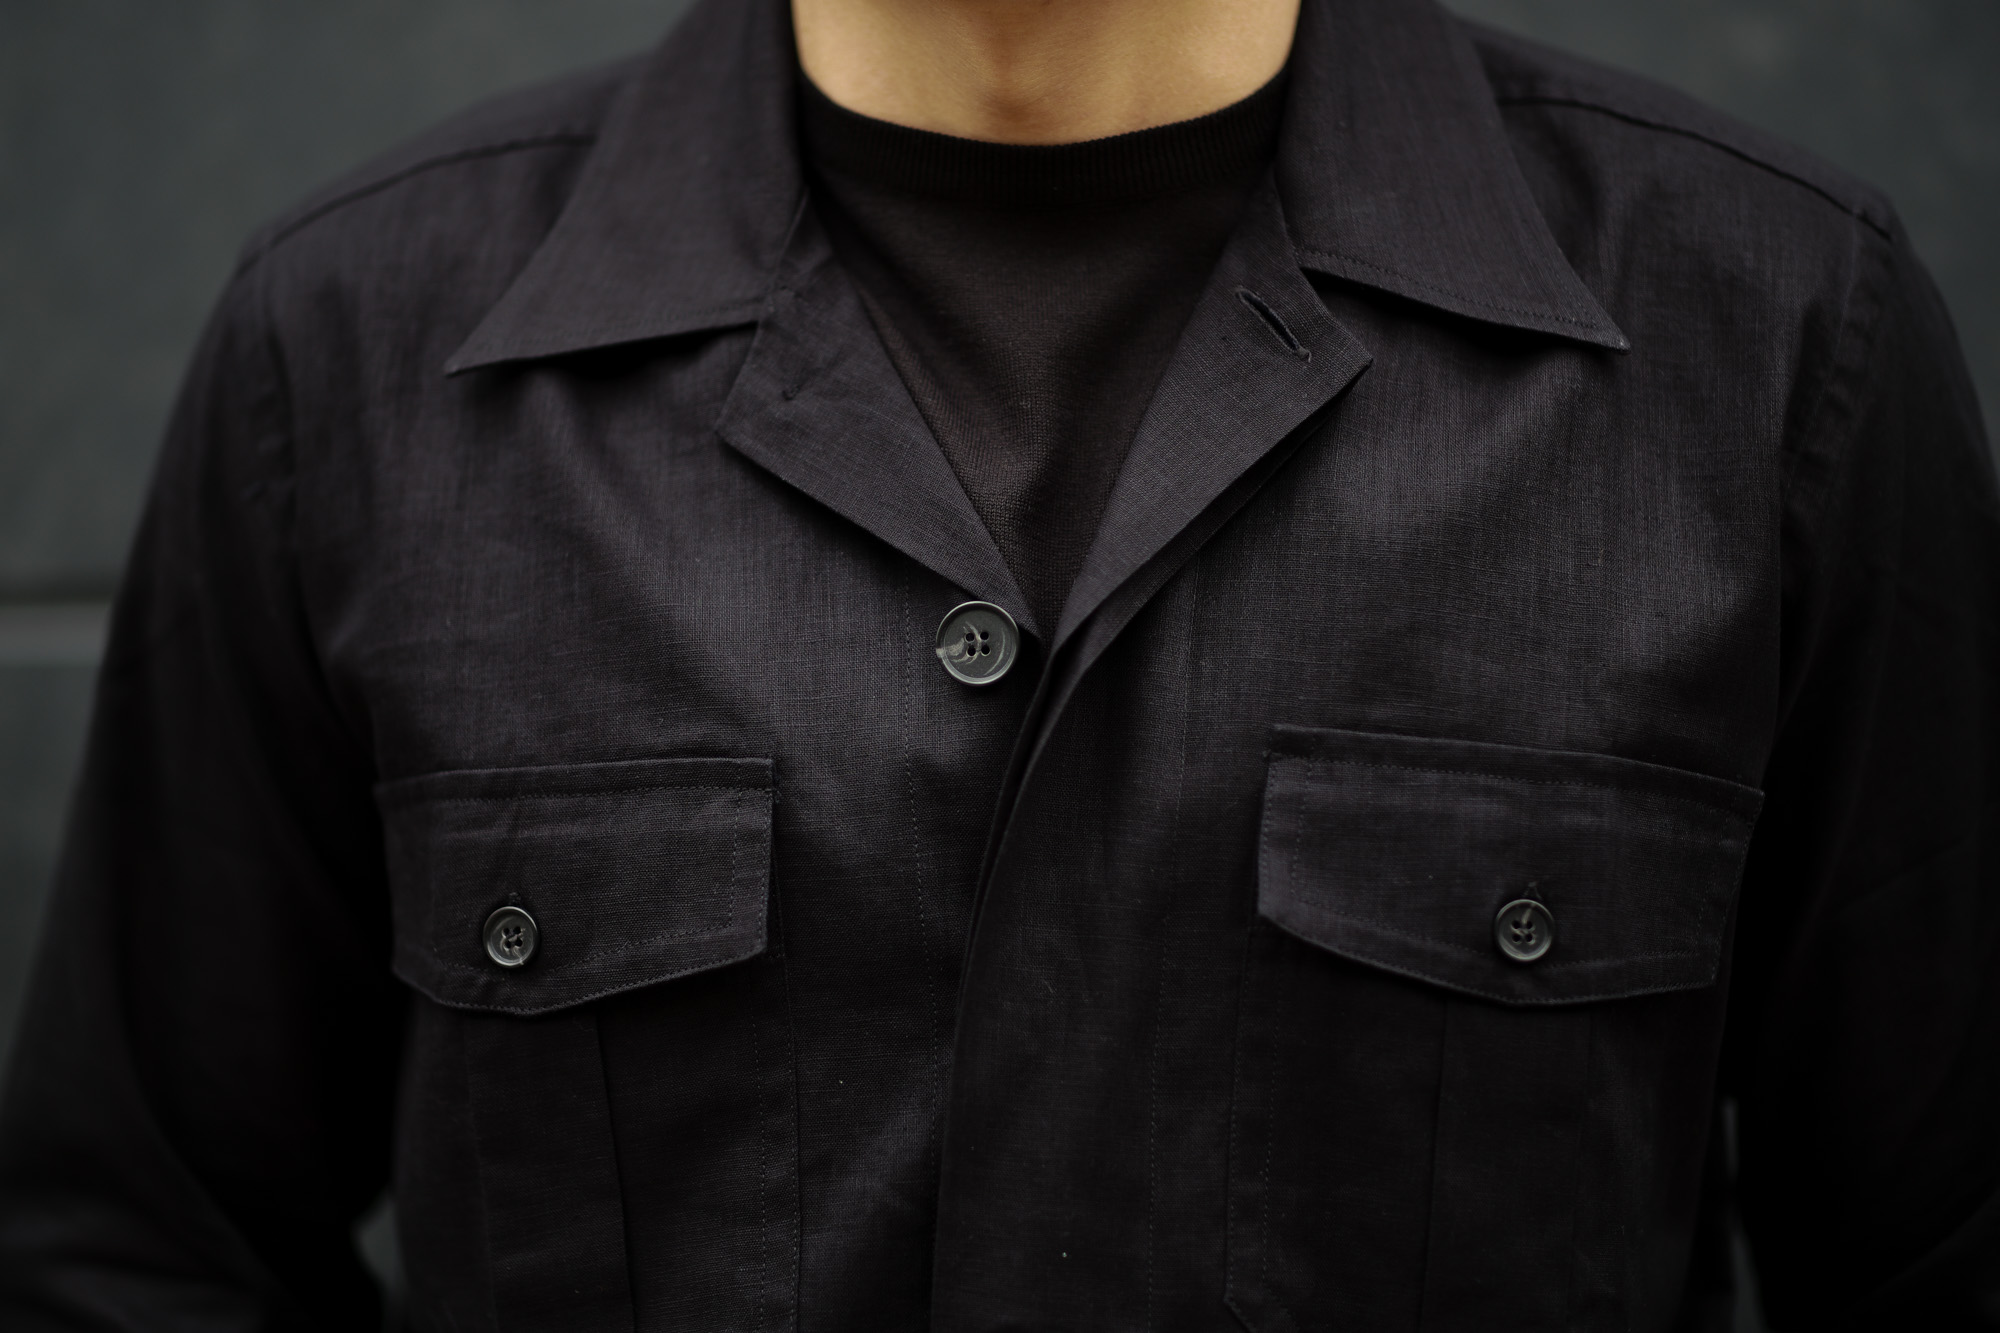 ORIAN (オリアン) LARMY リネンコットン サファリ ジャケット BLACK (ブラック・90) Made in italy (イタリア製)  2020 春夏新作 – 正規通販・名古屋のメンズセレクトショップ Alto e Diritto